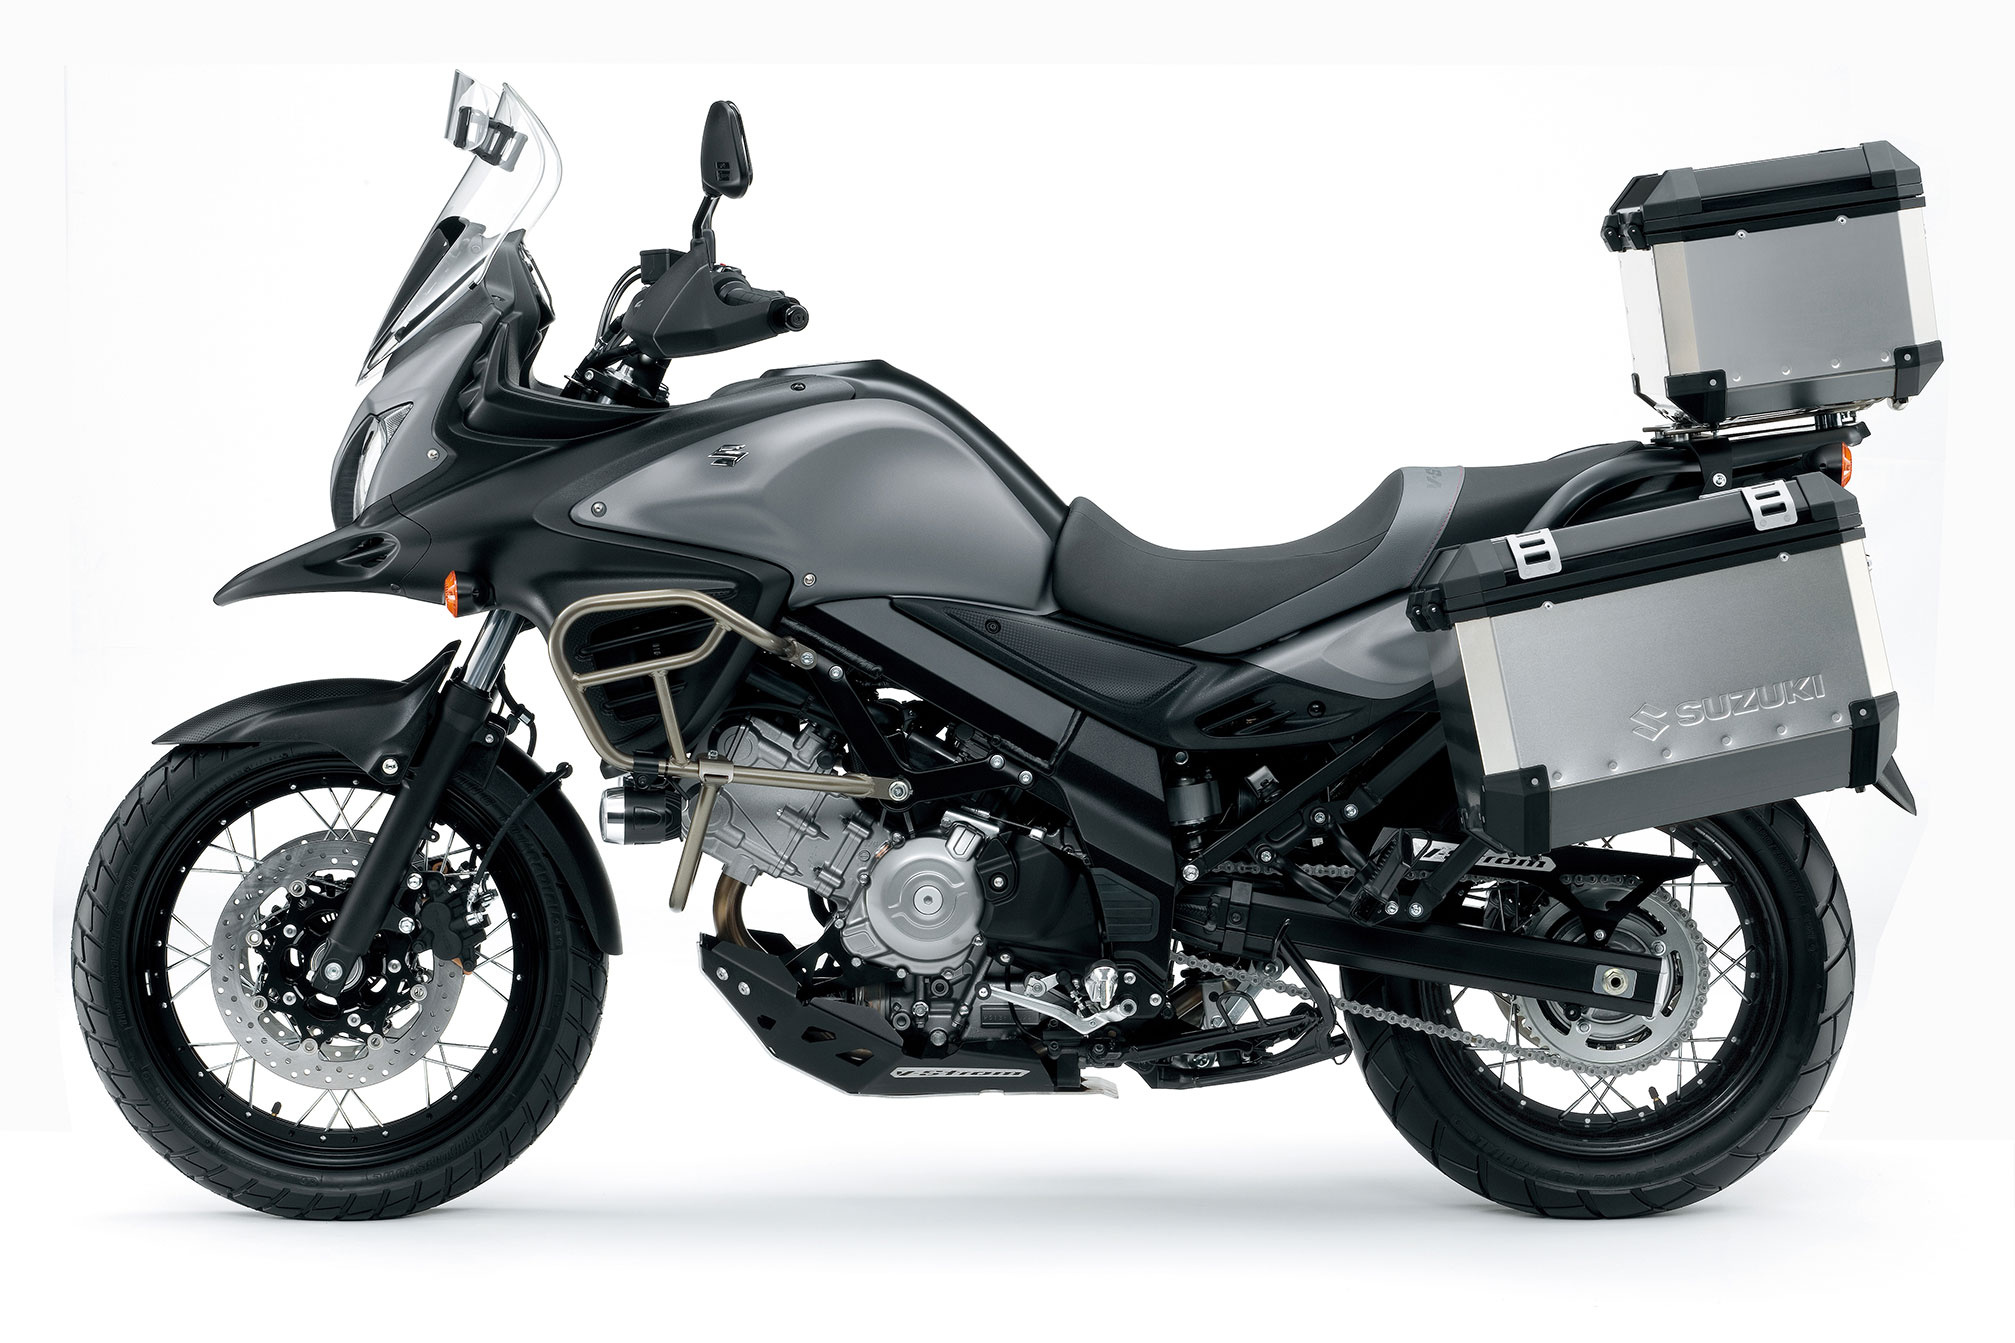 Suzuki V-Strom 650, 2015 model, Discount offer, Motorcycle sale, 2020x1350 HD Desktop